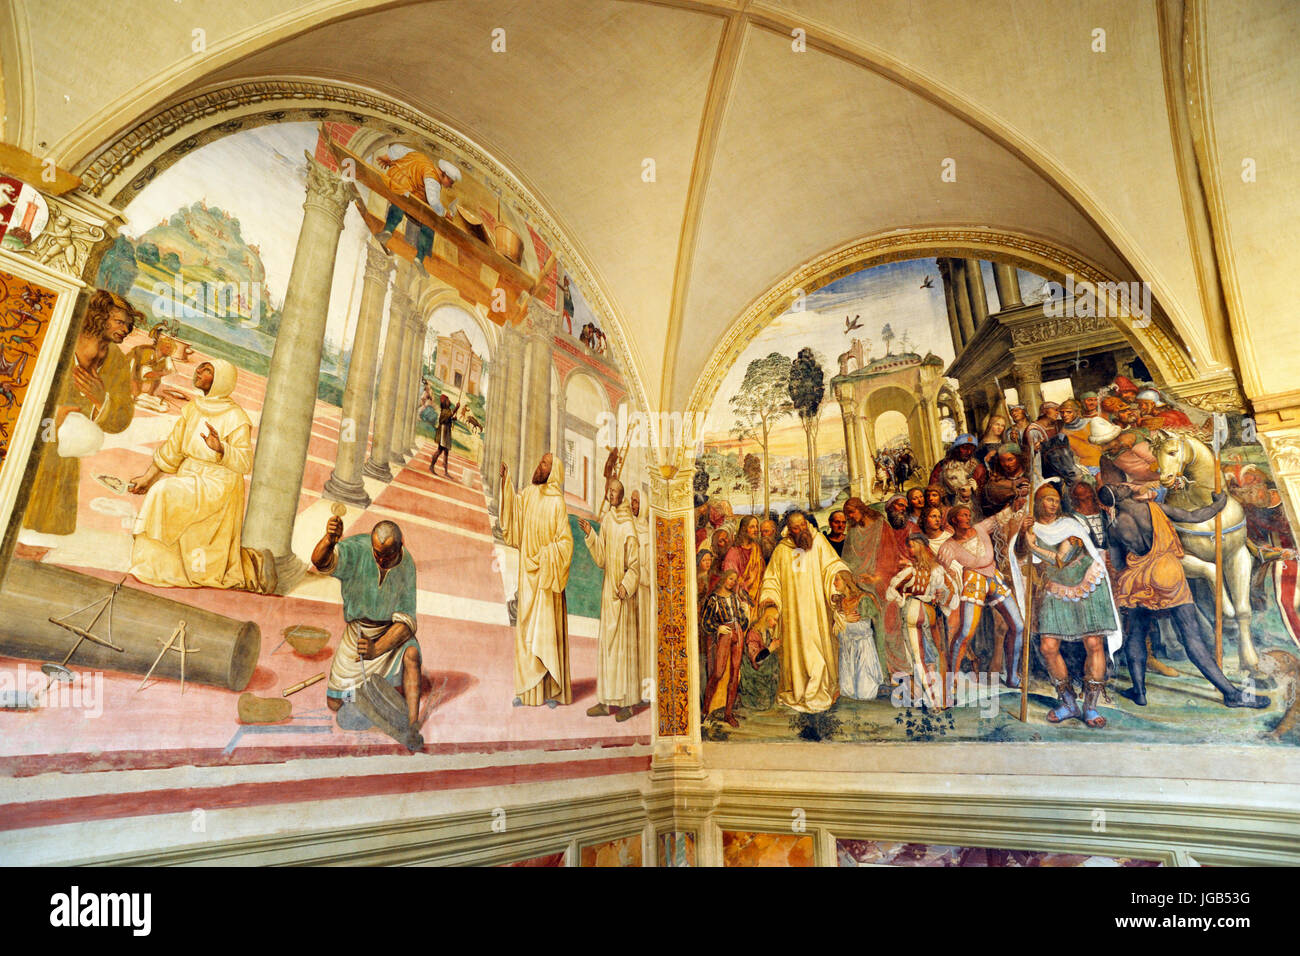 Fresques Renaissance, vie de St Benoît, peintures de il Sodoma, Chiostro Grande, Abbaye de Monte Oliveto Maggiore, Toscane, Italie Banque D'Images